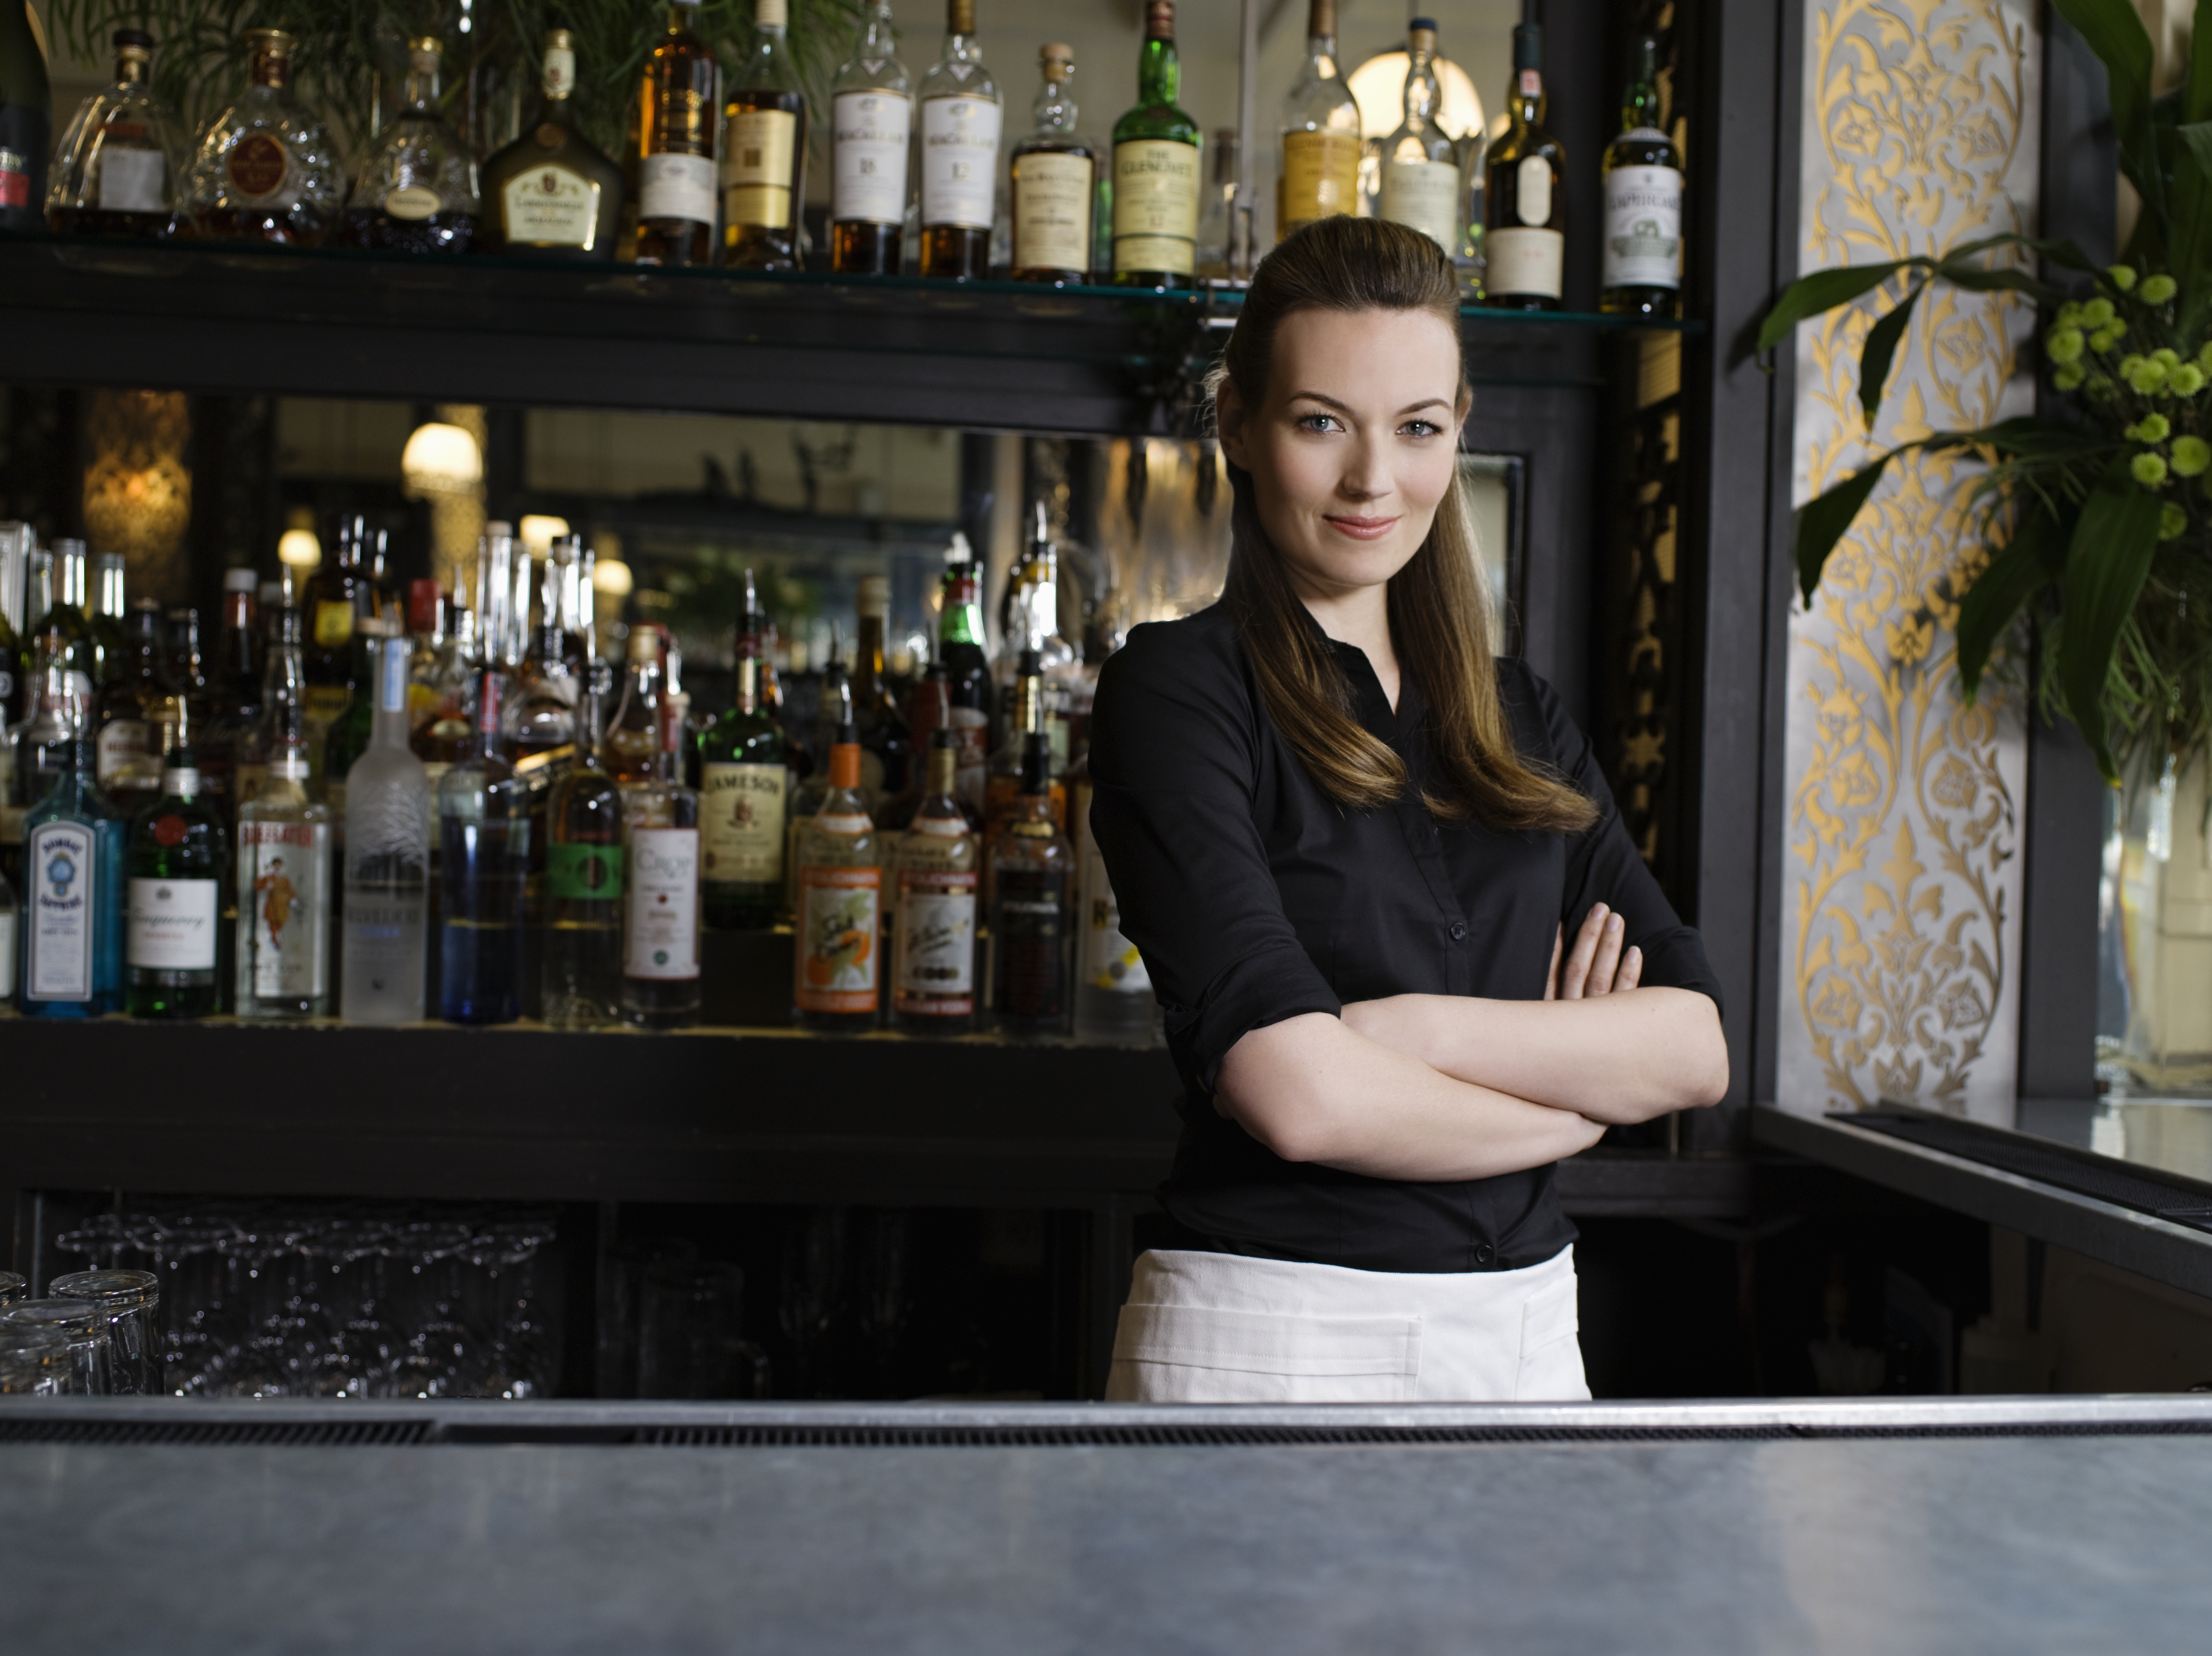 Une barmaid confiante se tenant derrière le bar | Source : Getty Images